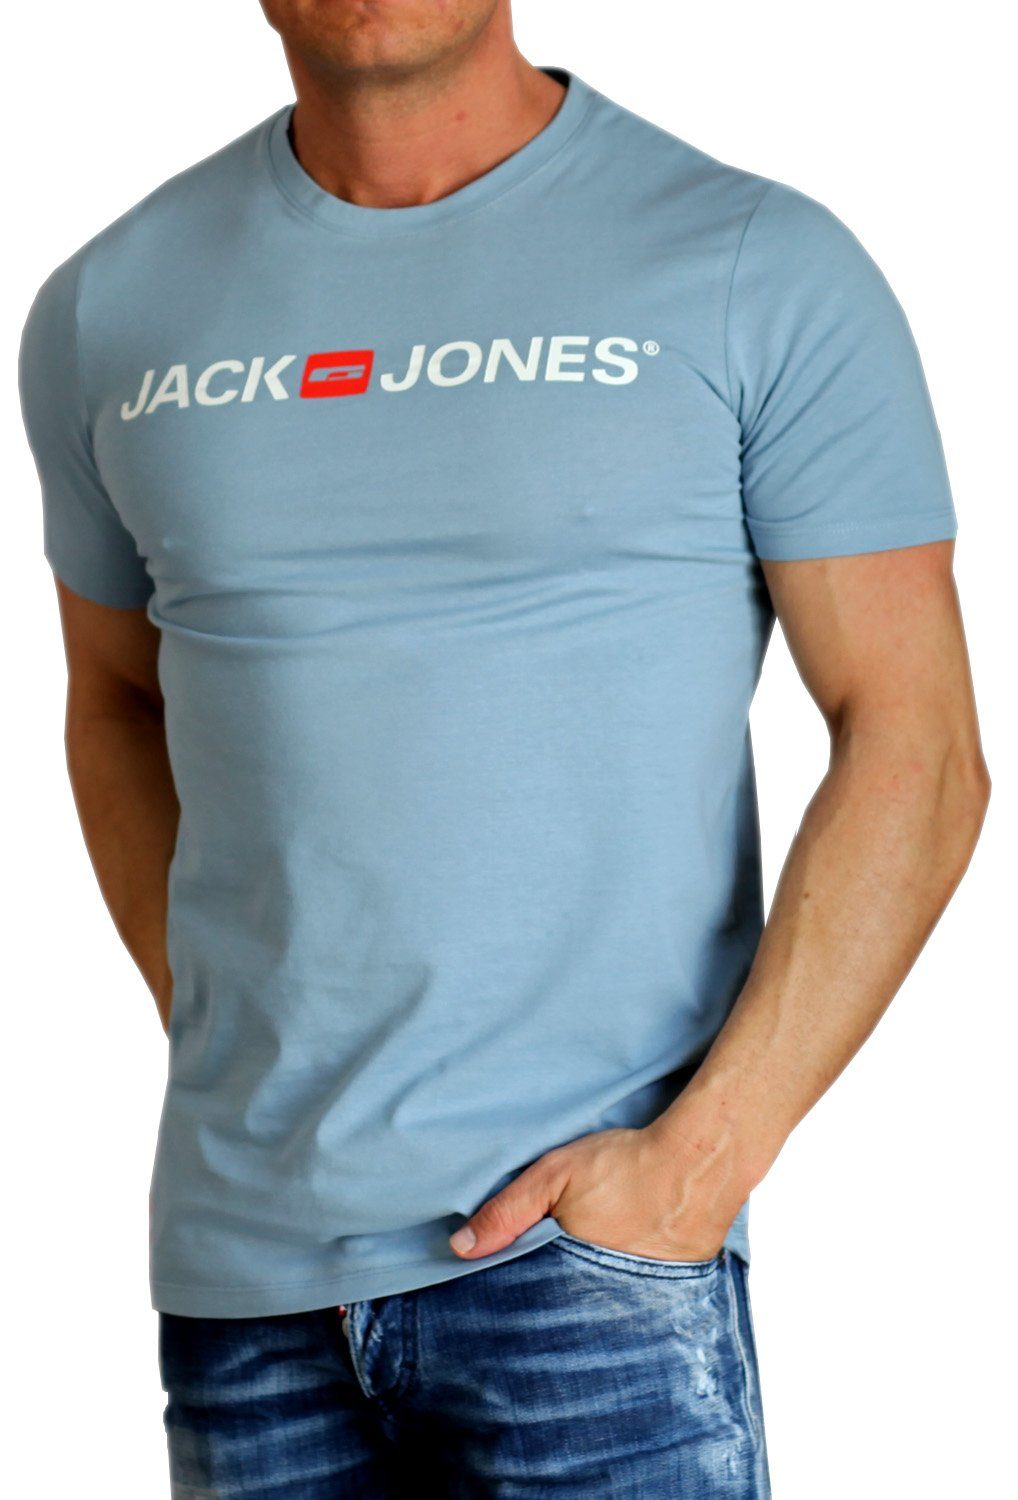 & Baumwolle Faded Rundhalsausschnitt, Jones Print-Shirt mit Jack aus Denim